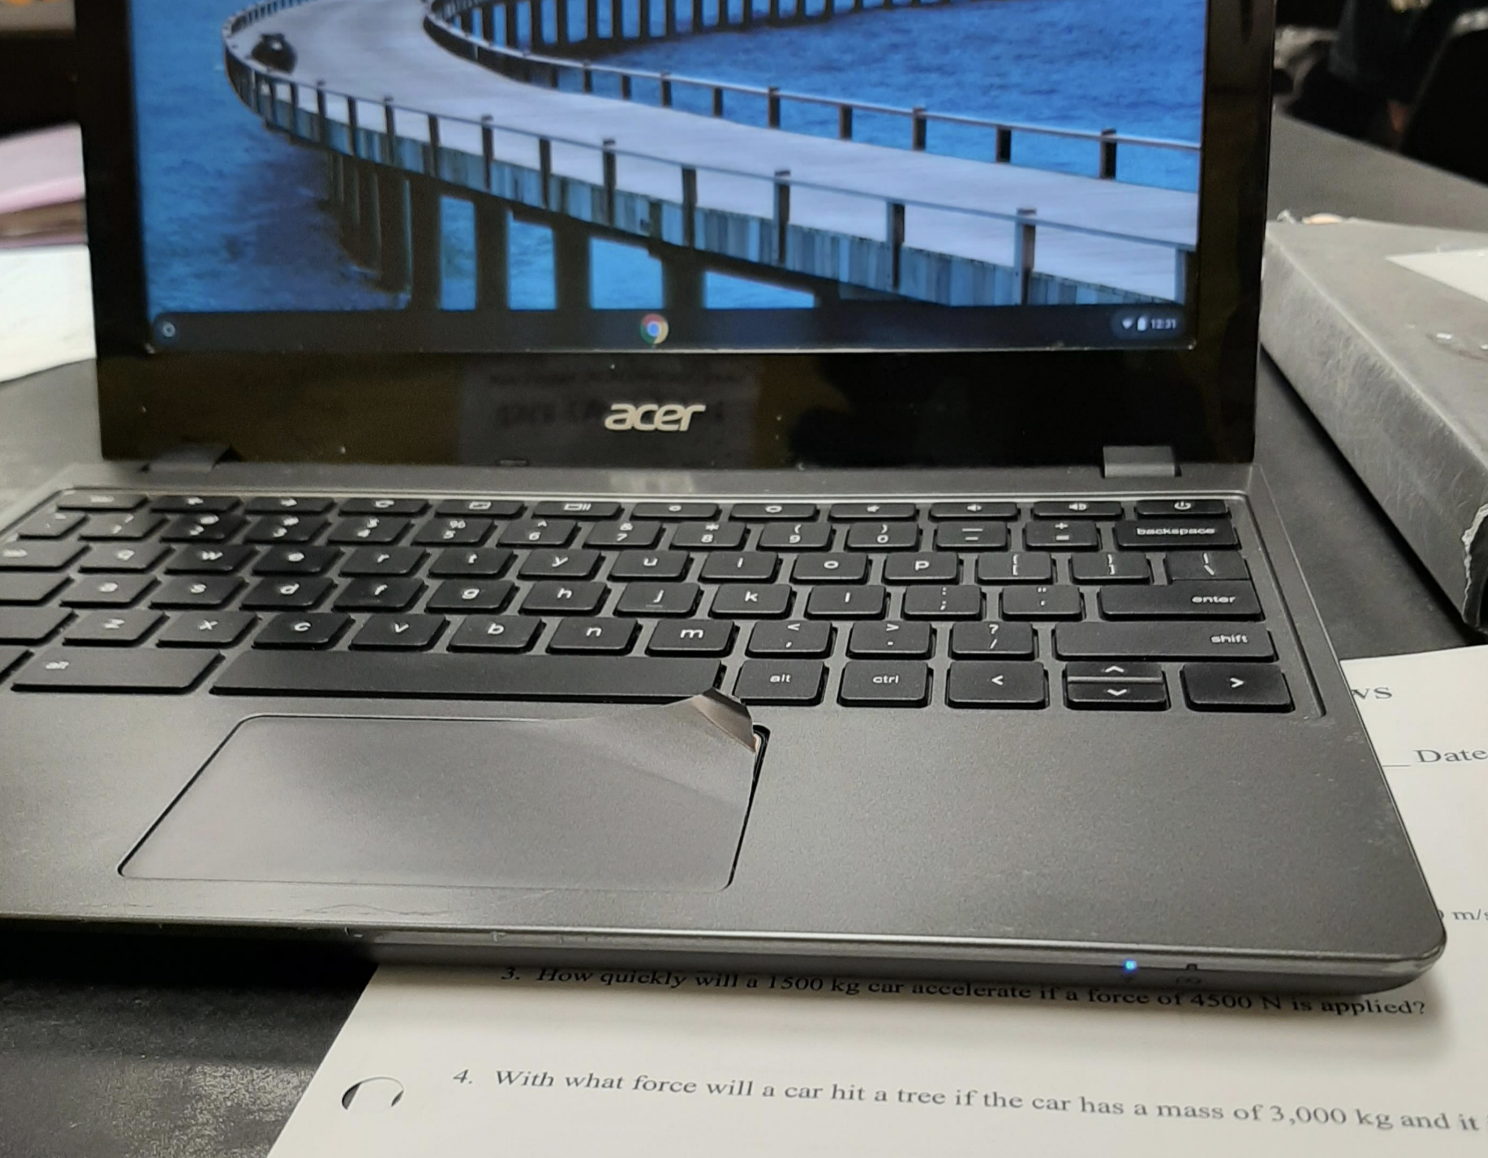 A peeling track pod on a laptop